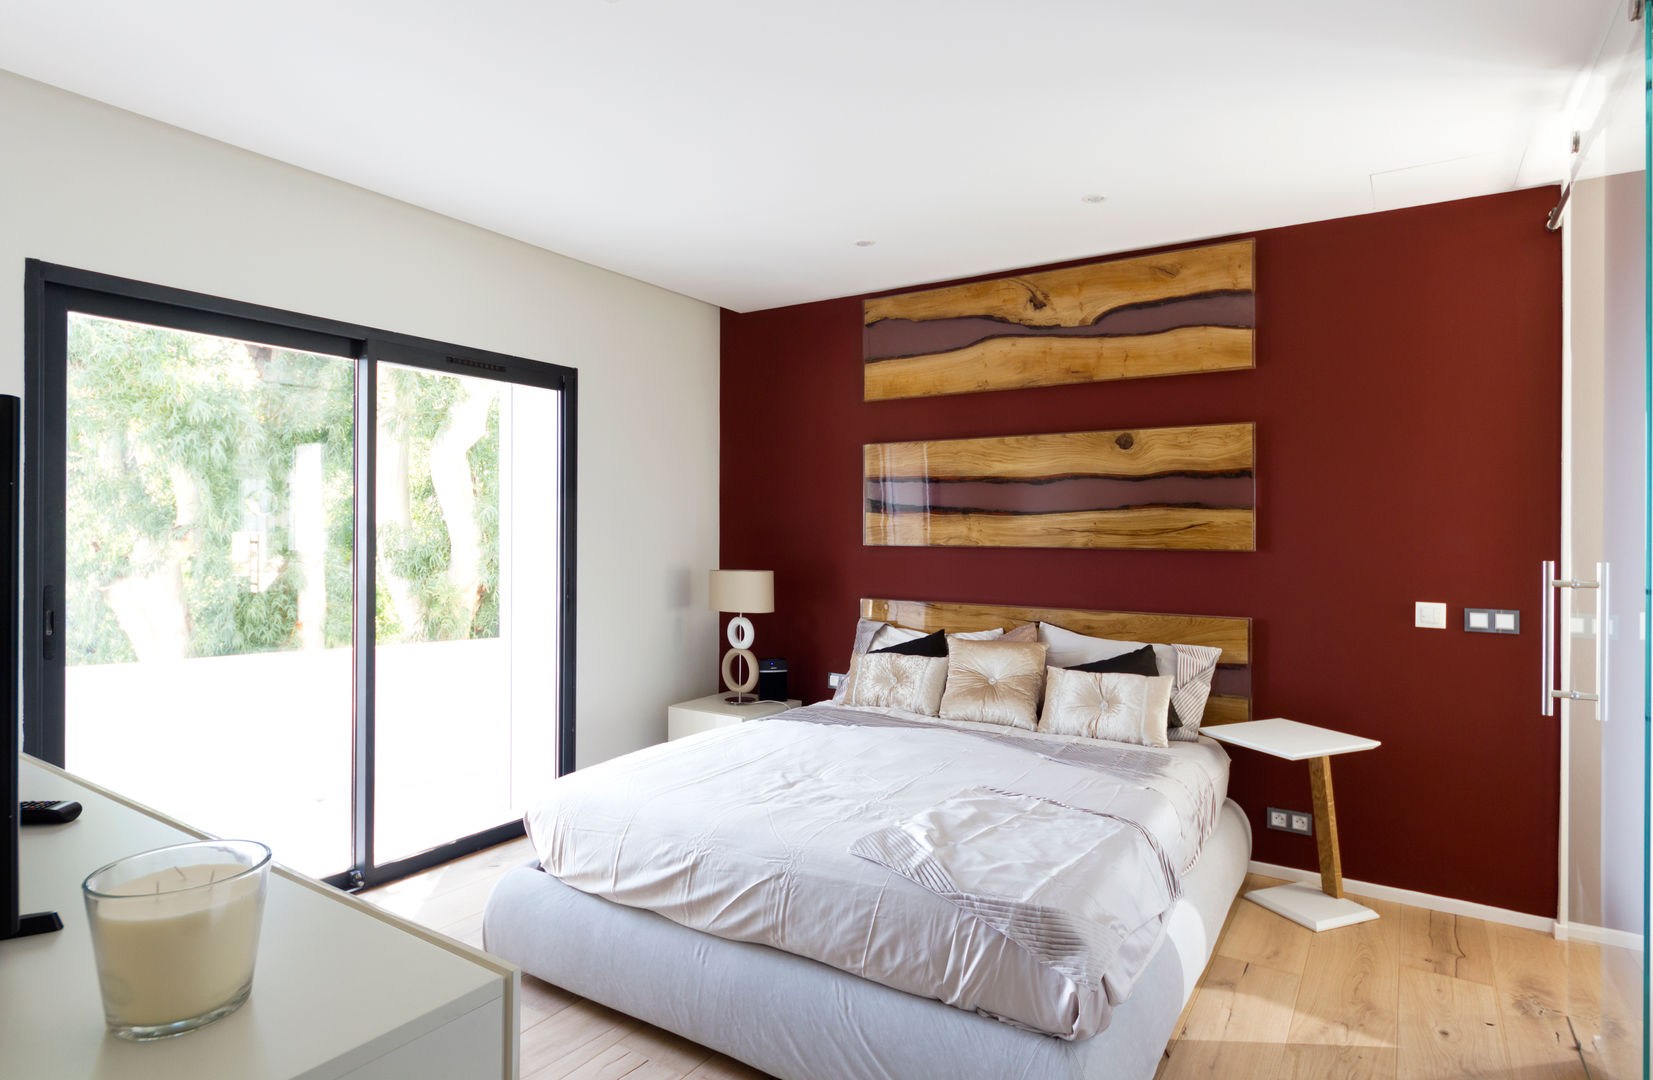 Restyling camera da letto con bagno en-suite, MBquadro Architetti MBquadro Architetti Спальня в стиле модерн